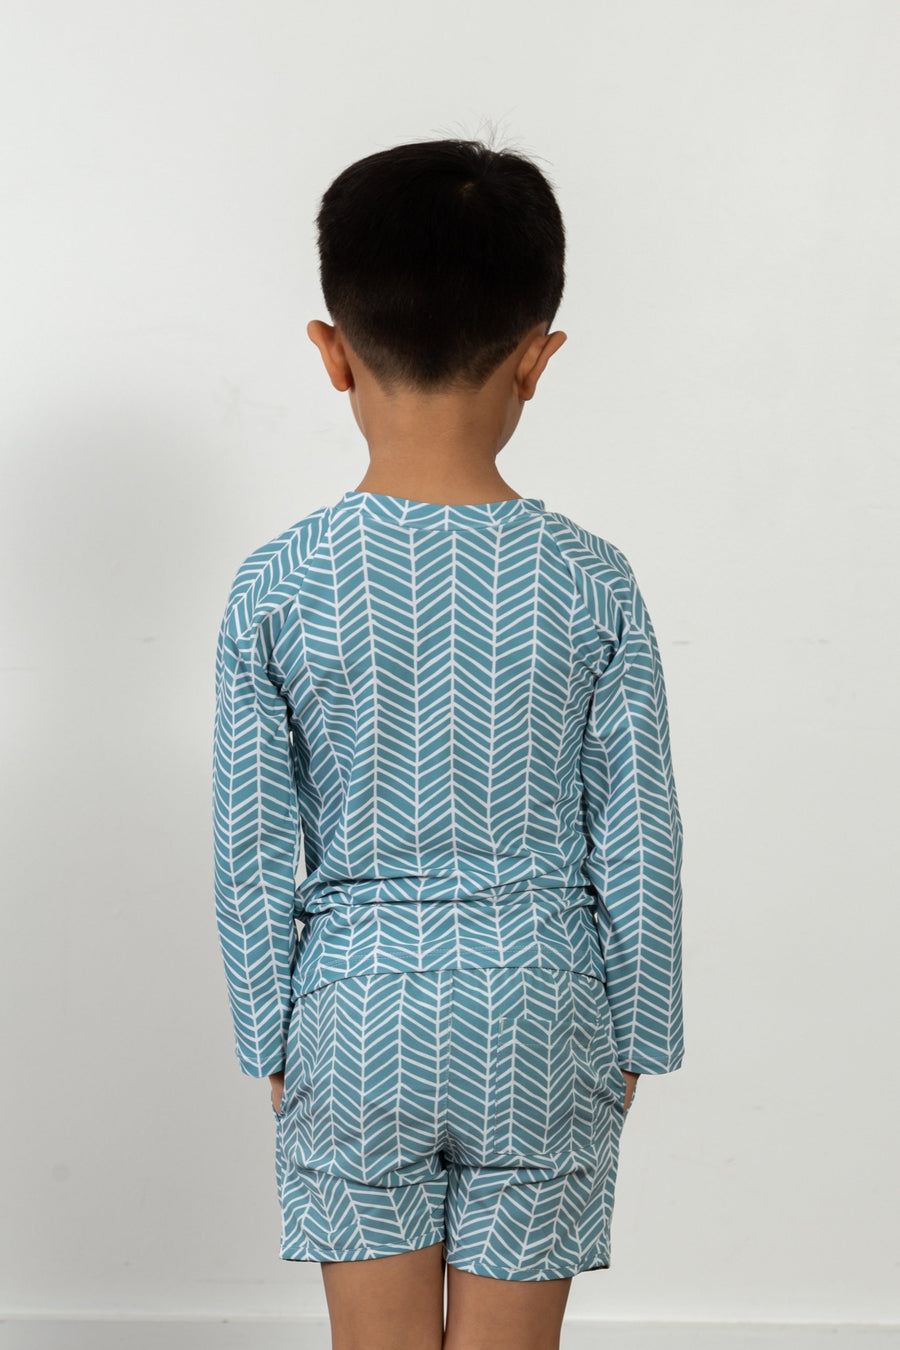 blue herringbone print Rashguard swimwear for kids